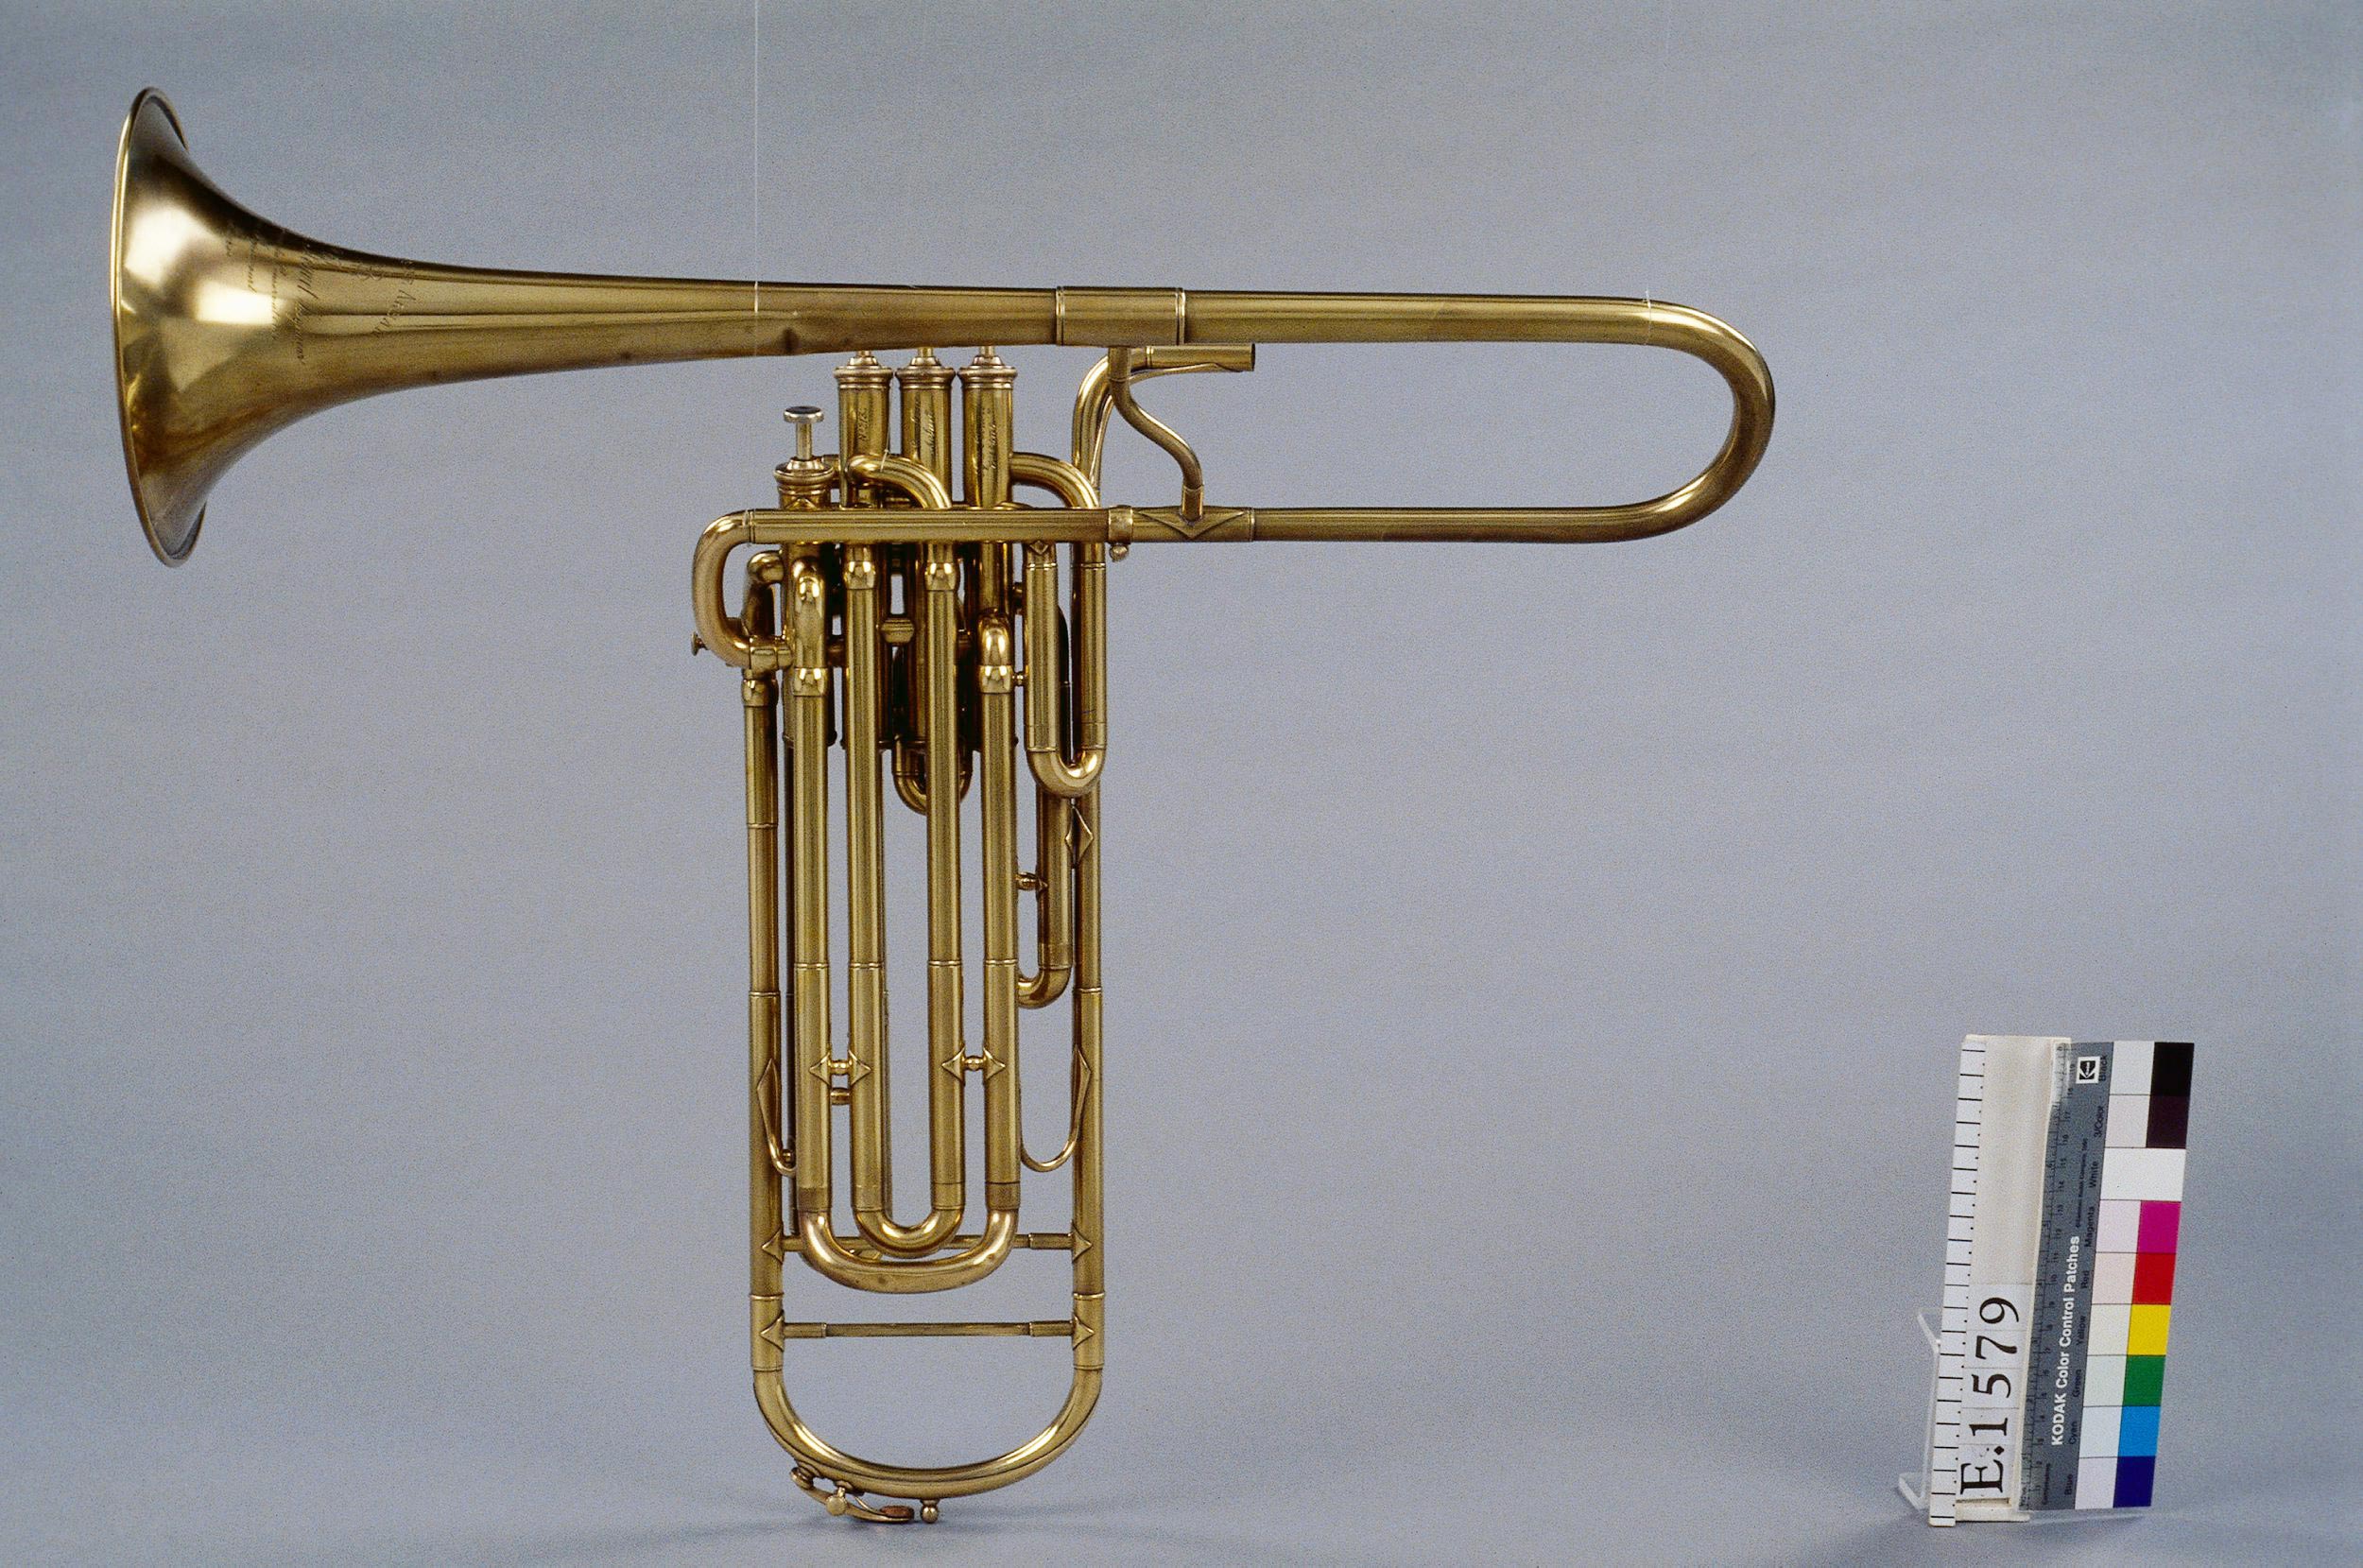 Trombone à pistons, Arban Bouvet, 1888-1889, Musée de la Musique, © Thierry Ollivier